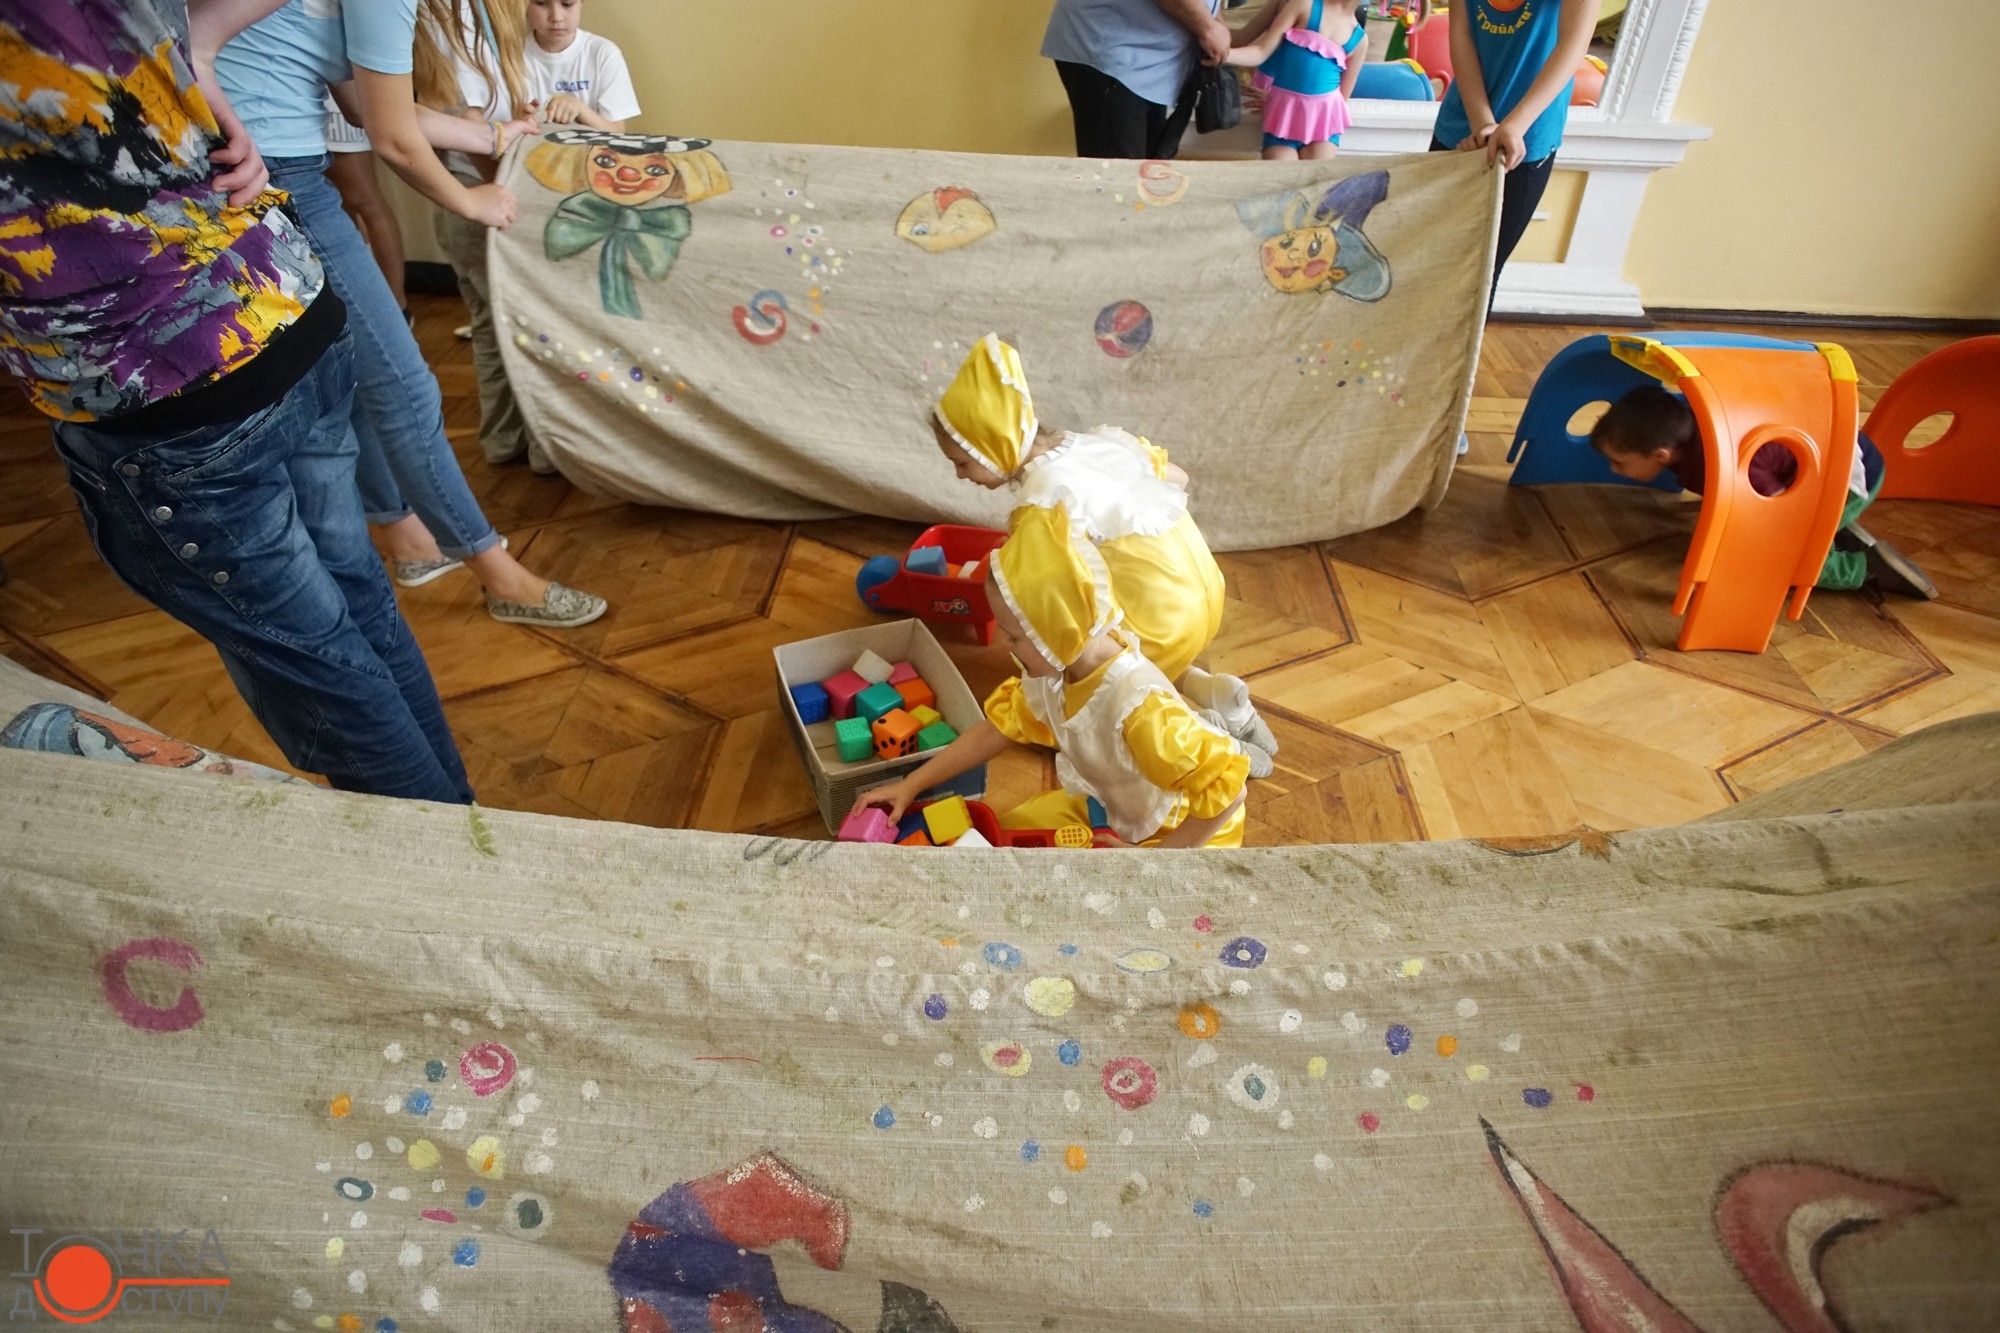 Від захвату очі горять – у кіровоградській філармонії розважаються діти з усіх куточків області 